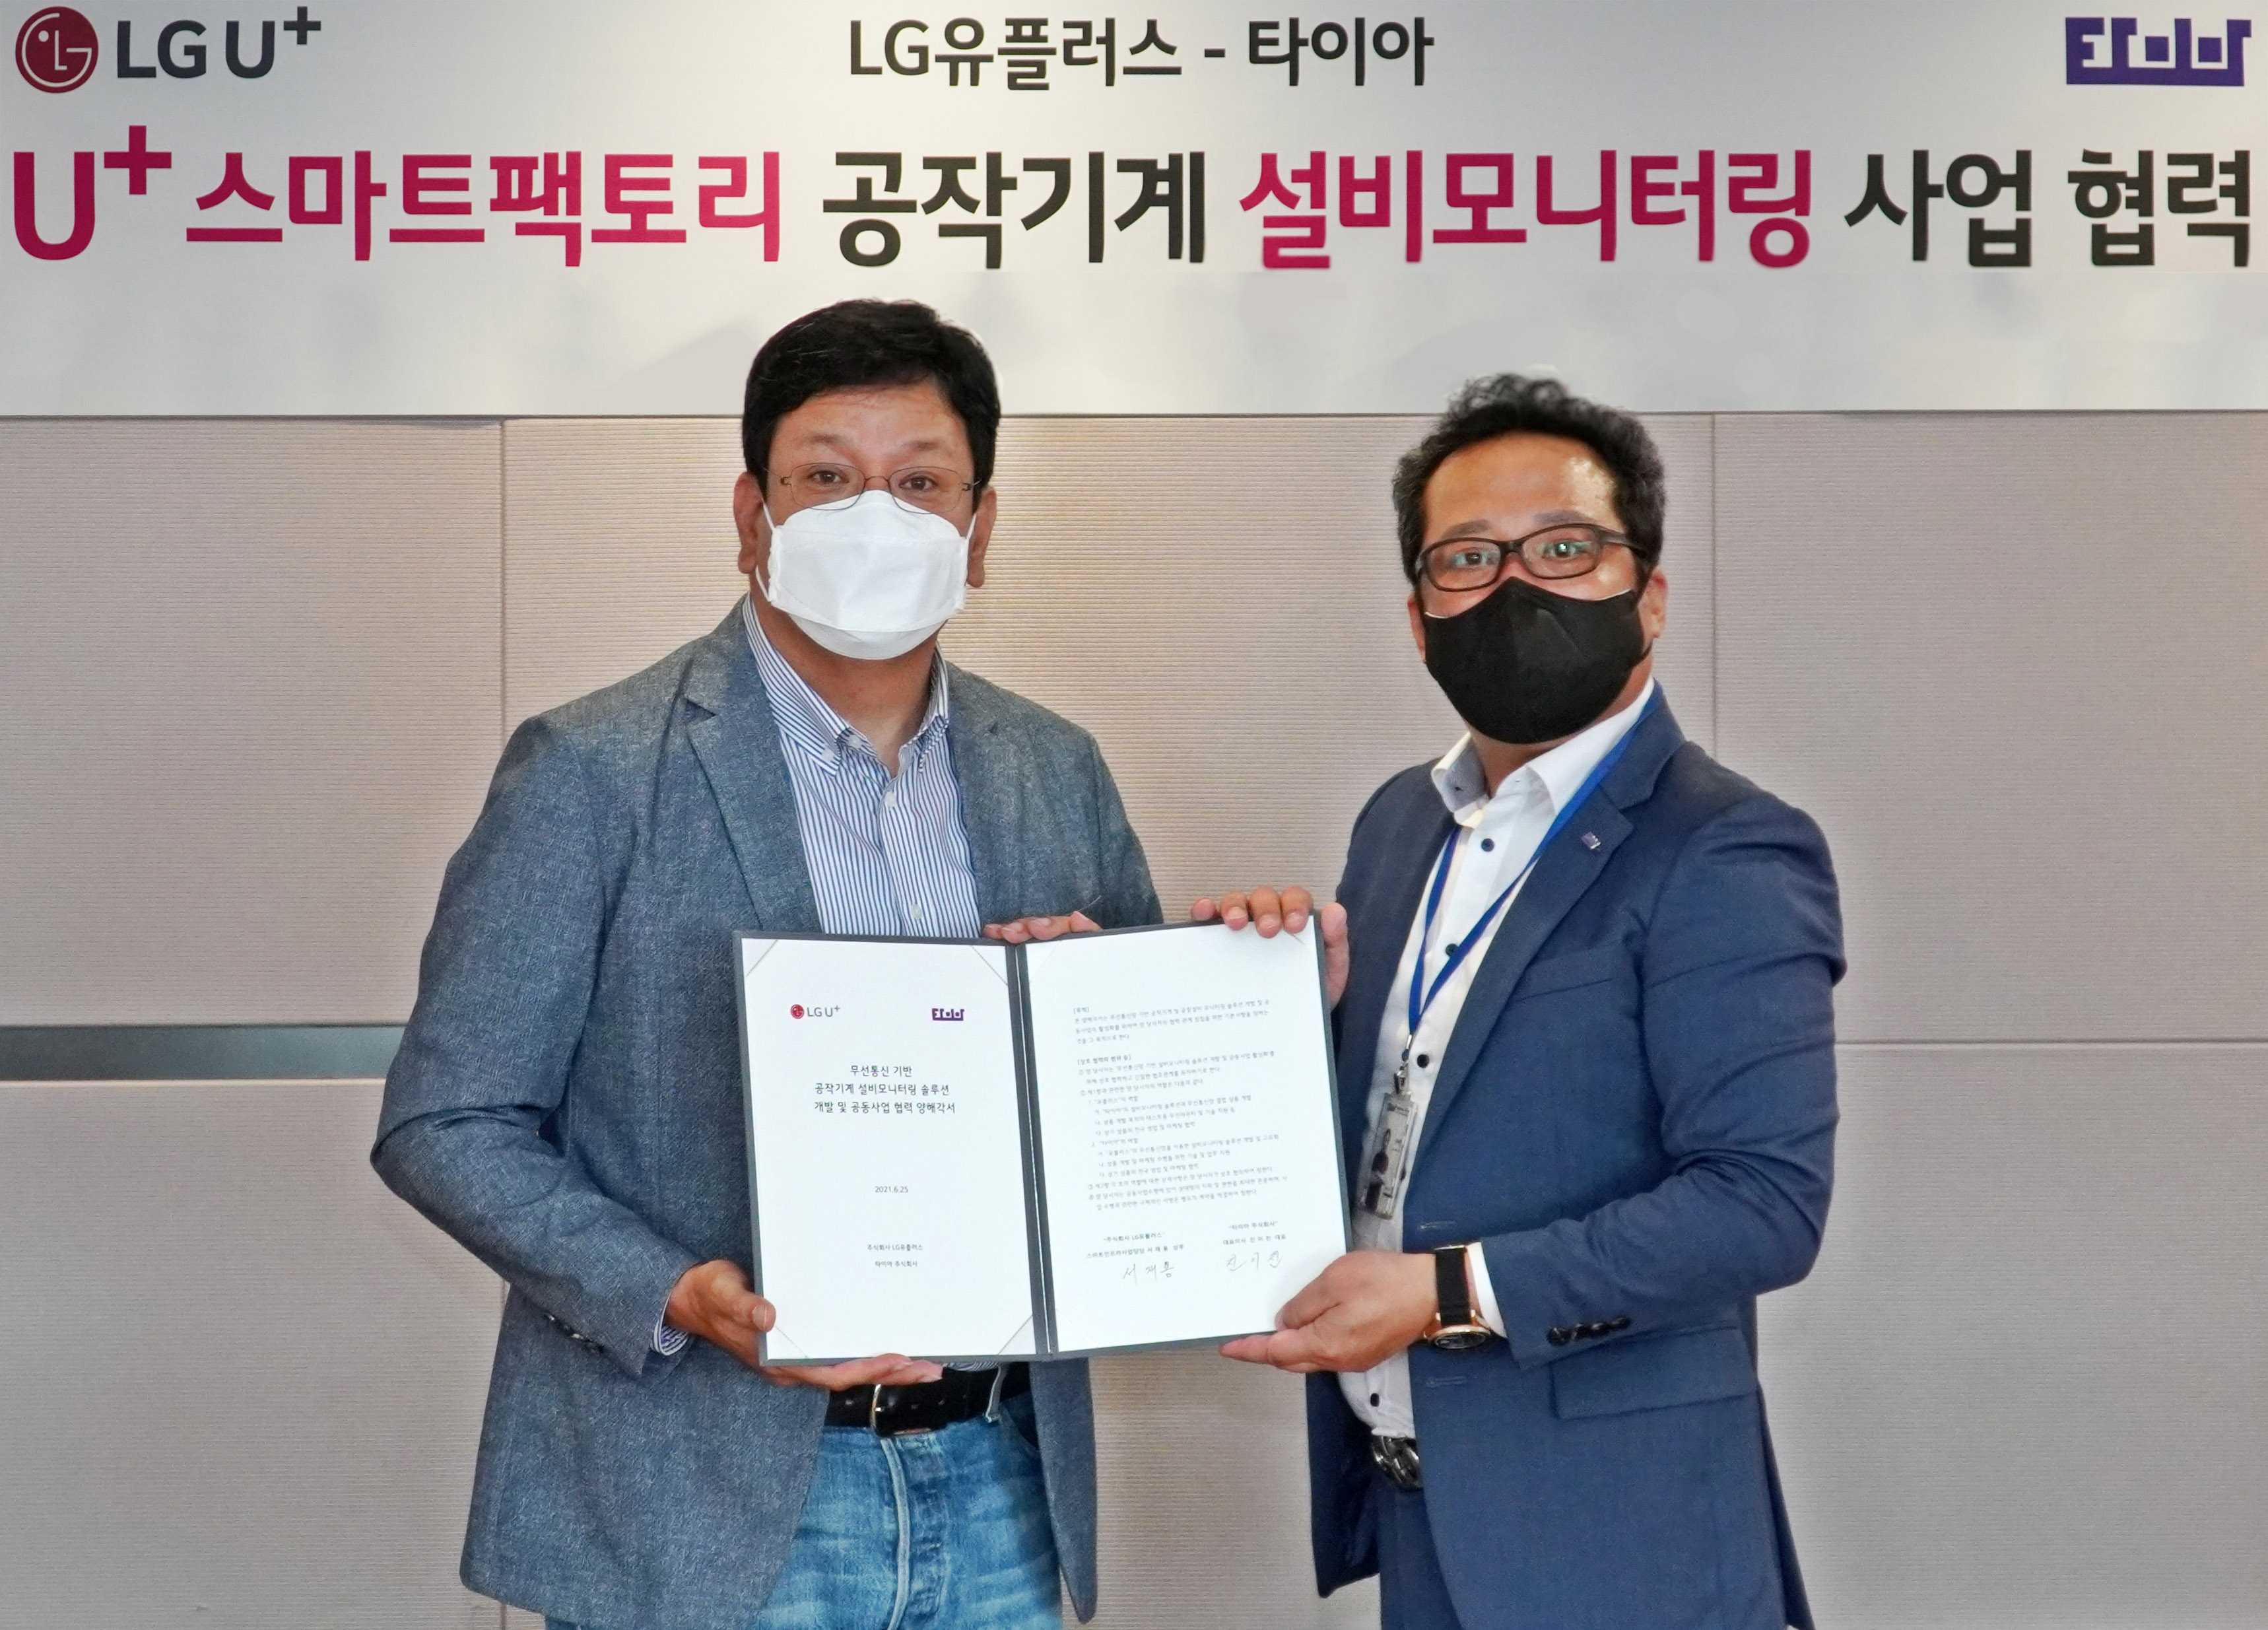 서재용 LG유플러스 스마트인프라사업담당(상무)와 진이진 타이아 대표(오른쪽)가 업무협약식에 참석한 모습